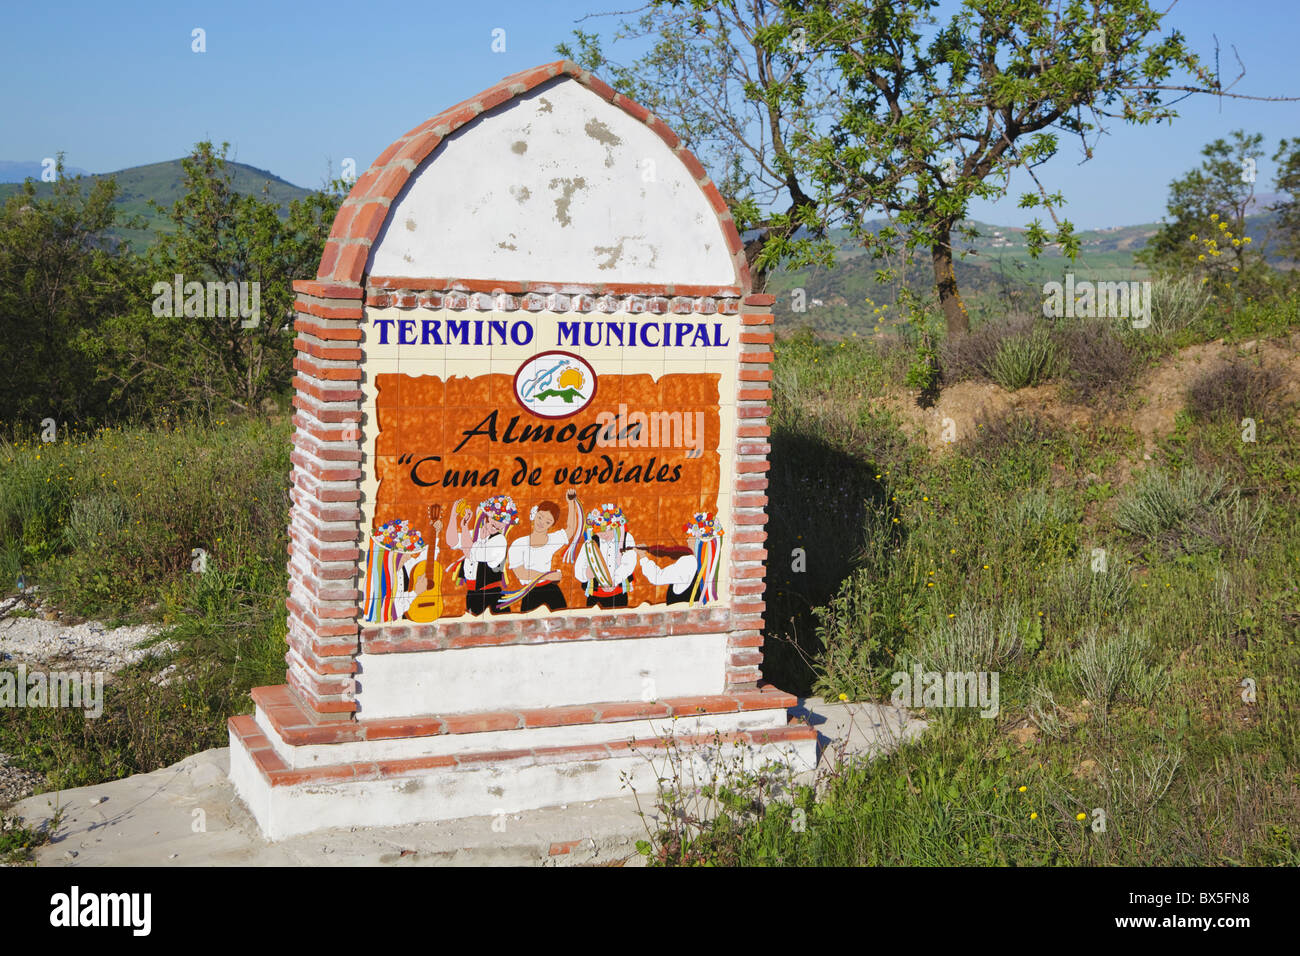 Almogia, provincia di Malaga, Spagna. Segno di ceramica in ingresso alla città la proclamazione di Cuna de Verdiales o la base del Verdiales.. Foto Stock